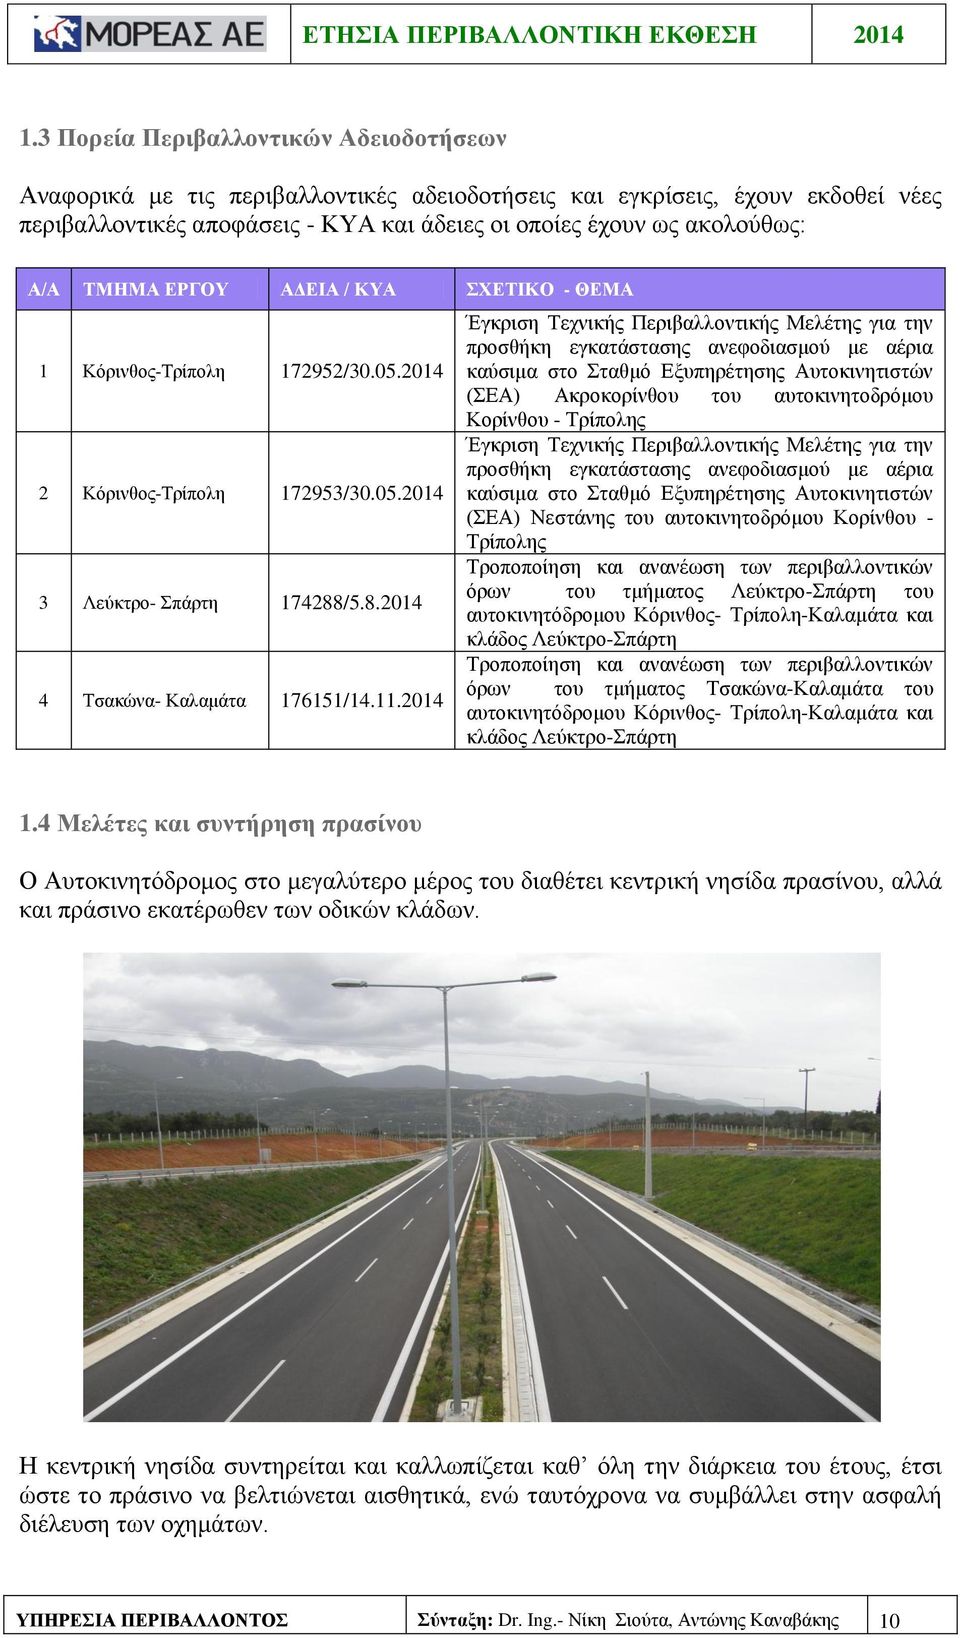 2014 Έγκριση Τεχνικής Περιβαλλοντικής Μελέτης για την προσθήκη εγκατάστασης ανεφοδιασμού με αέρια καύσιμα στο Σταθμό Εξυπηρέτησης Αυτοκινητιστών (ΣΕΑ) Ακροκορίνθου του αυτοκινητοδρόμου Κορίνθου -